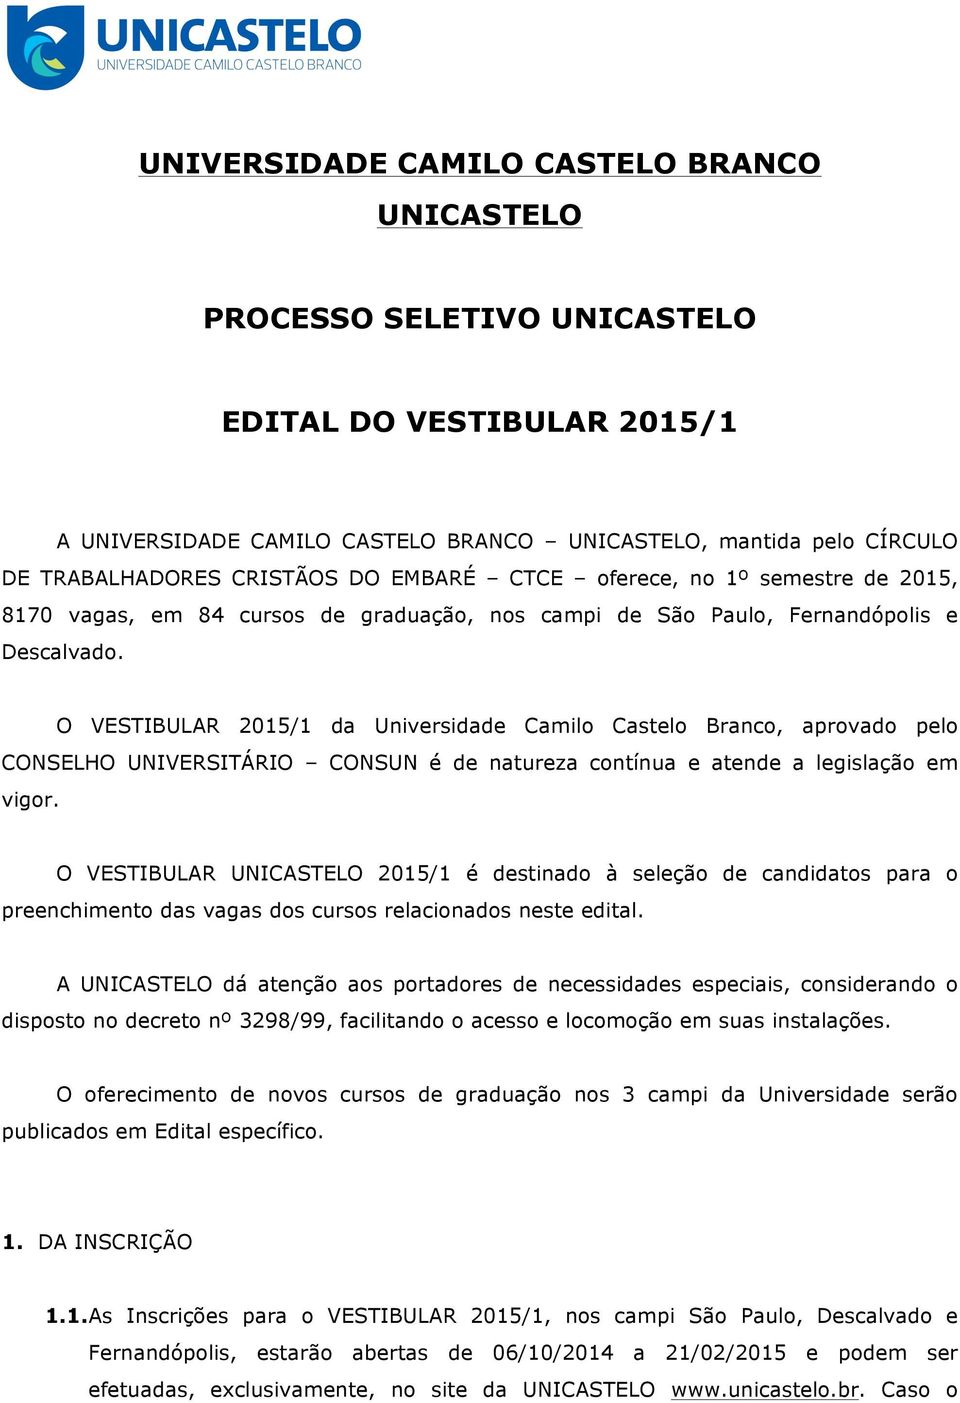 O VESTIBULAR 2015/1 da Universidade Camilo Castelo Branco, aprovado pelo CONSELHO UNIVERSITÁRIO CONSUN é de natureza contínua e atende a legislação em vigor.